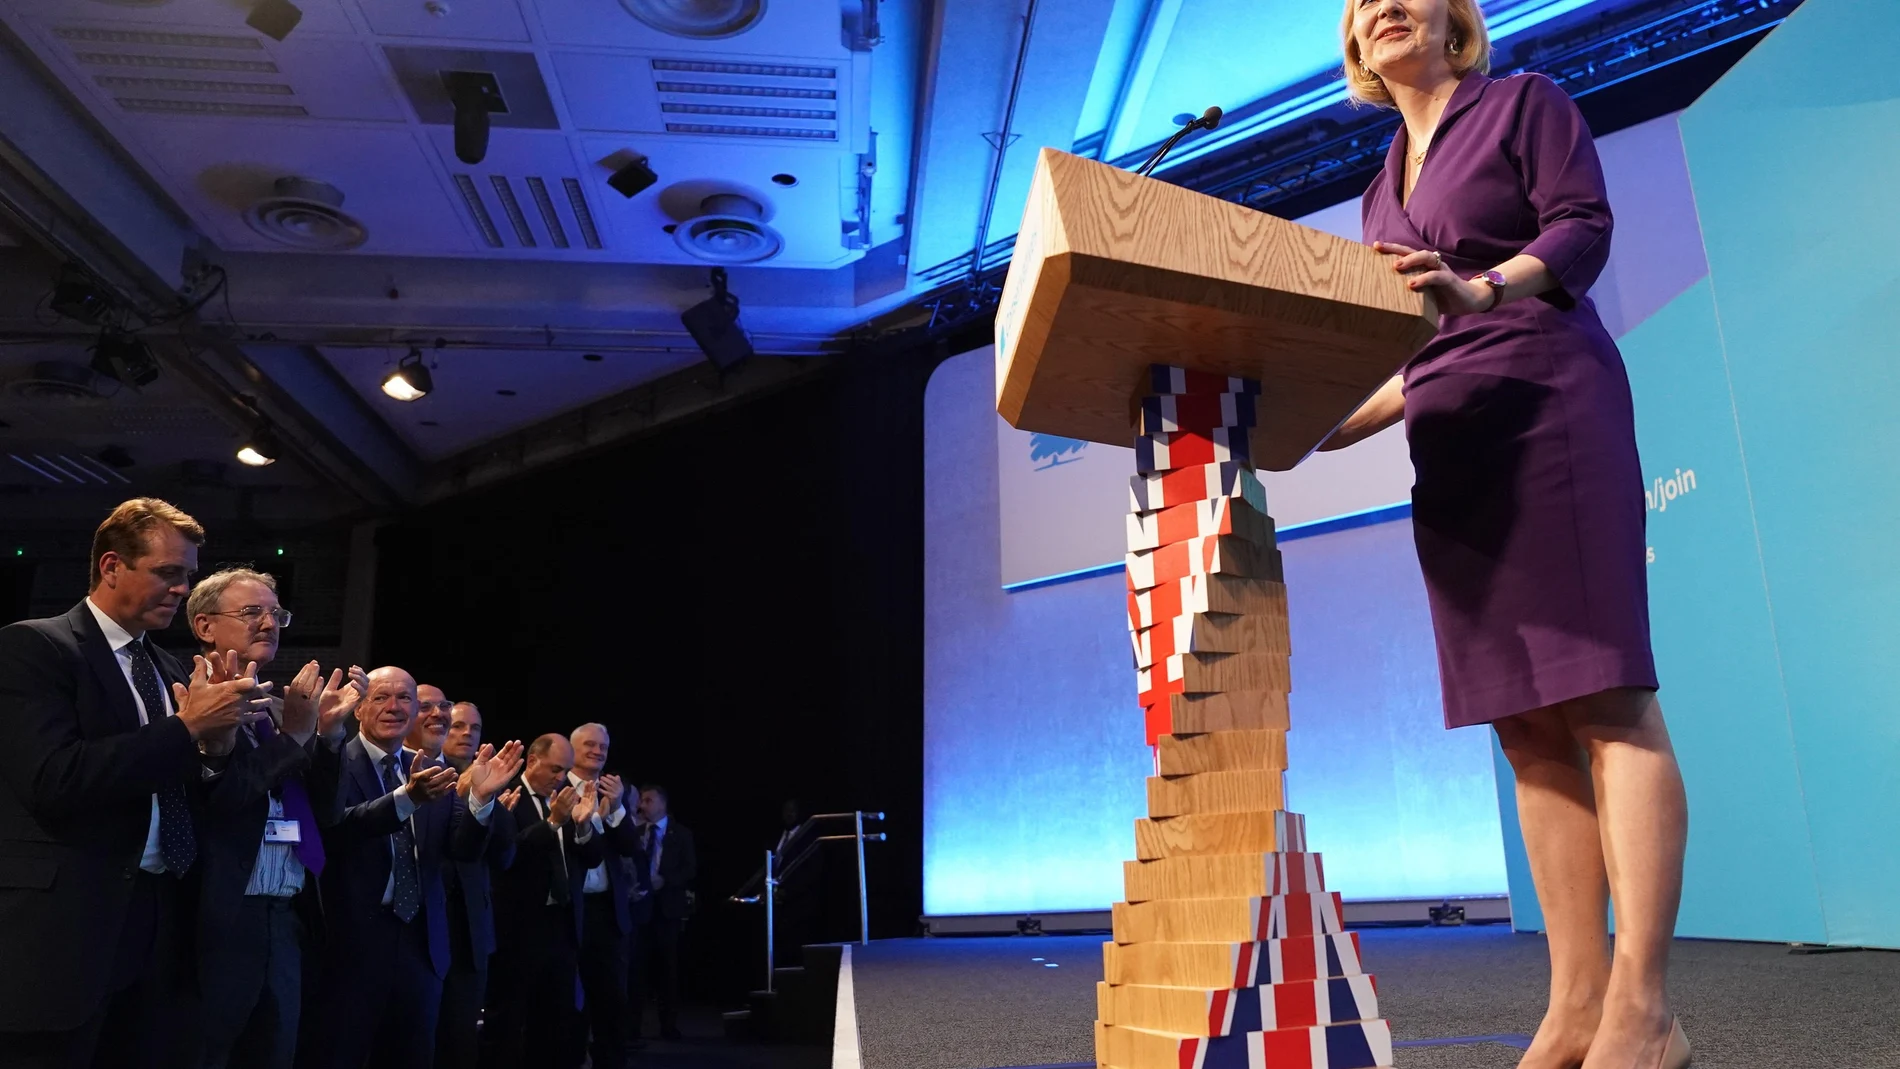 La nueva líder del Partido Conservador, Liz Truss, tras el anuncio de su victoria en el Queen Elizabeth II Centre, Londres